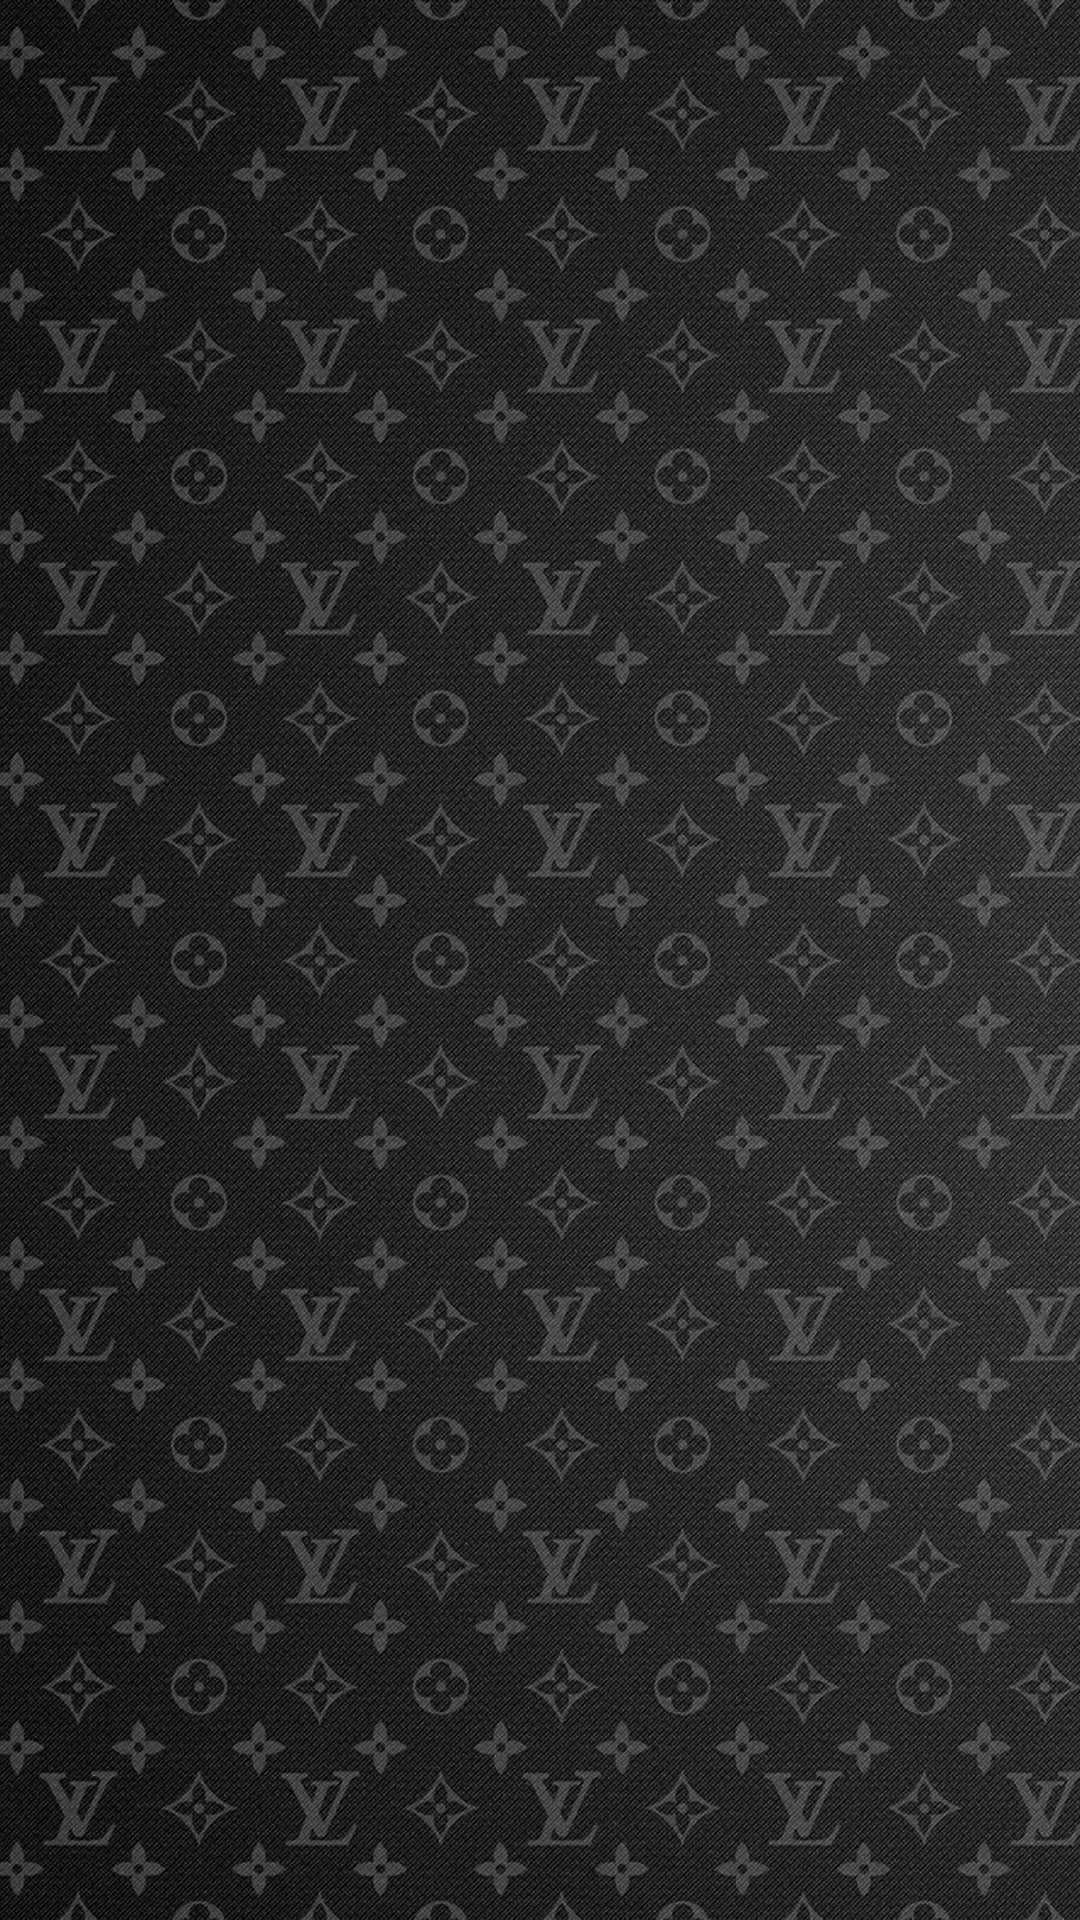 Louis Vuitton 4k 1440 X 2560 Wallpaper